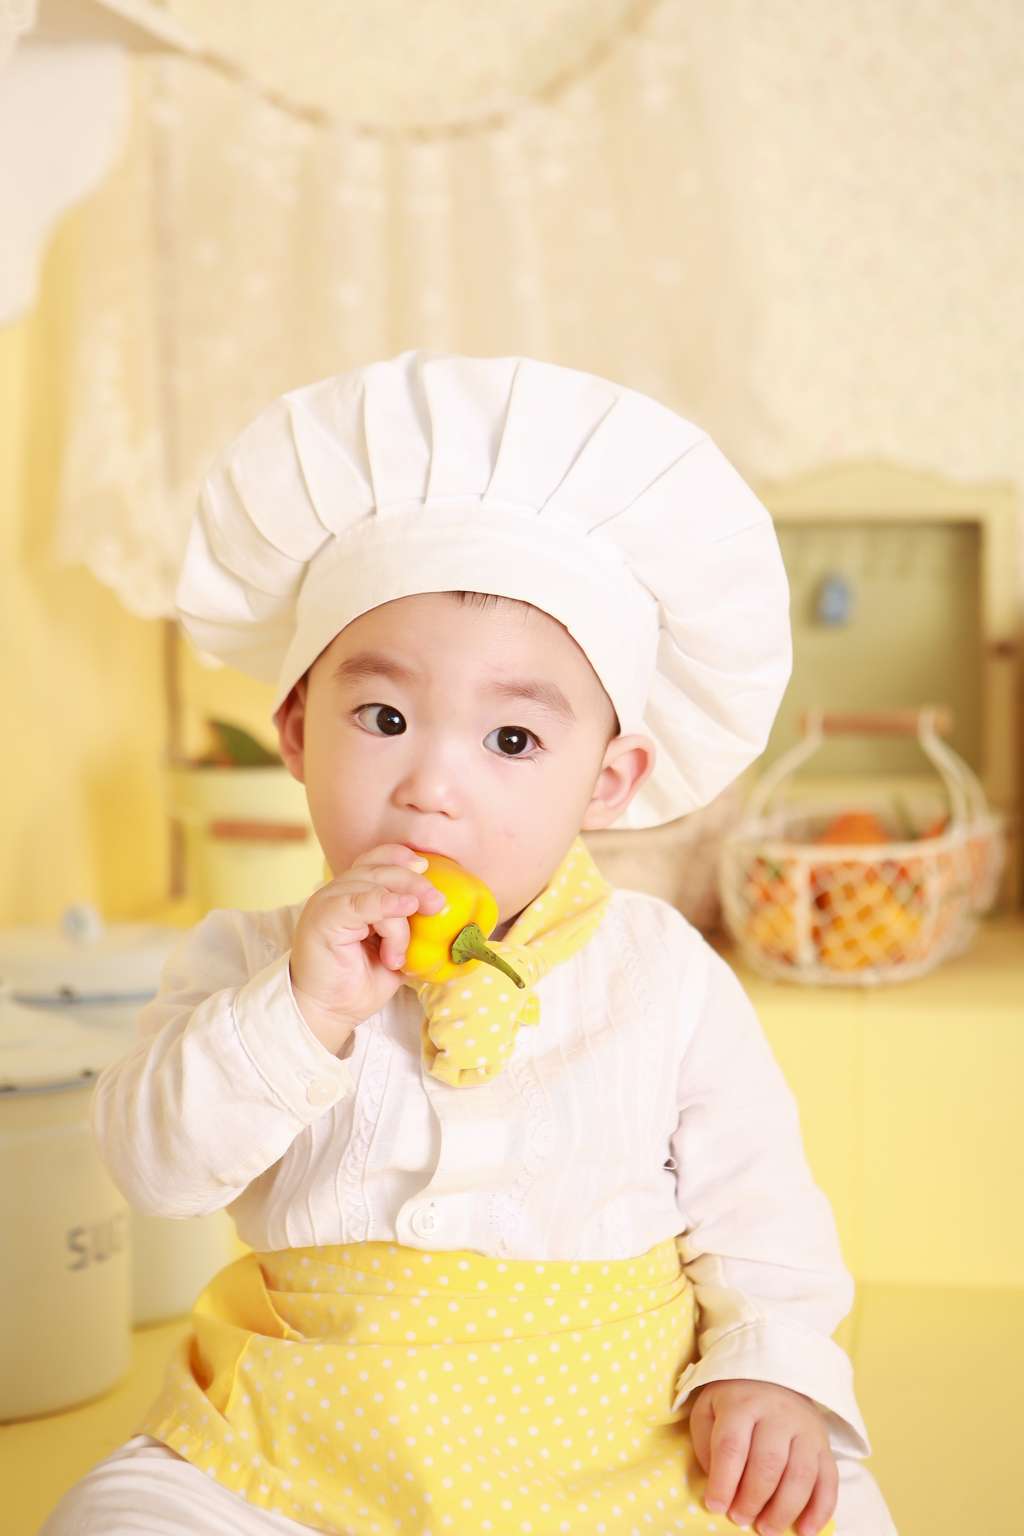 En cuisinant, les enfants apprennent à aimer les fruits et légumes. © Pixabay, Pexels